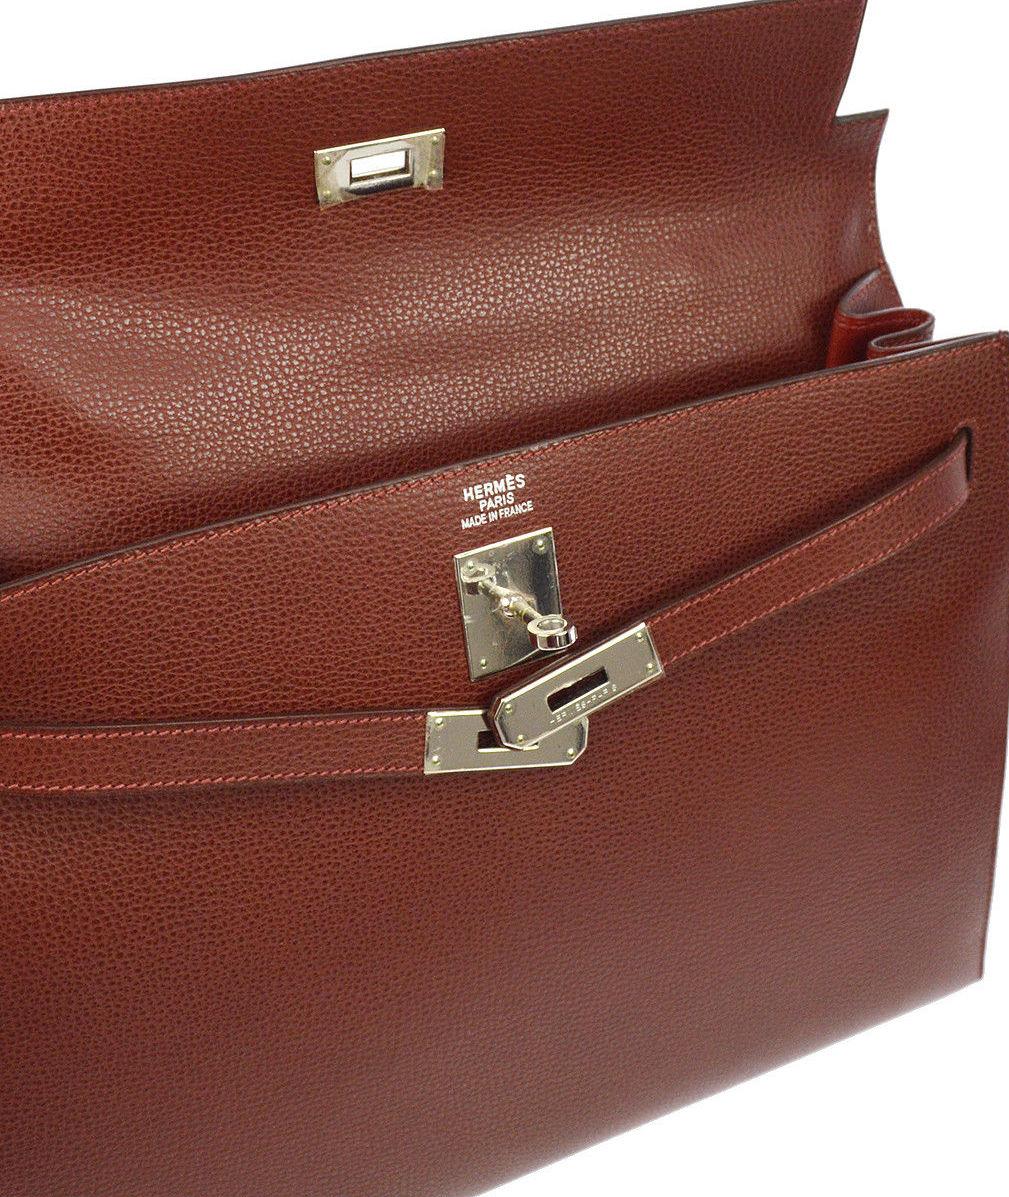 Brown Hermes Kelly 35 Red Leather Palladium Top Handle Satchel Shoulder Bag in Box